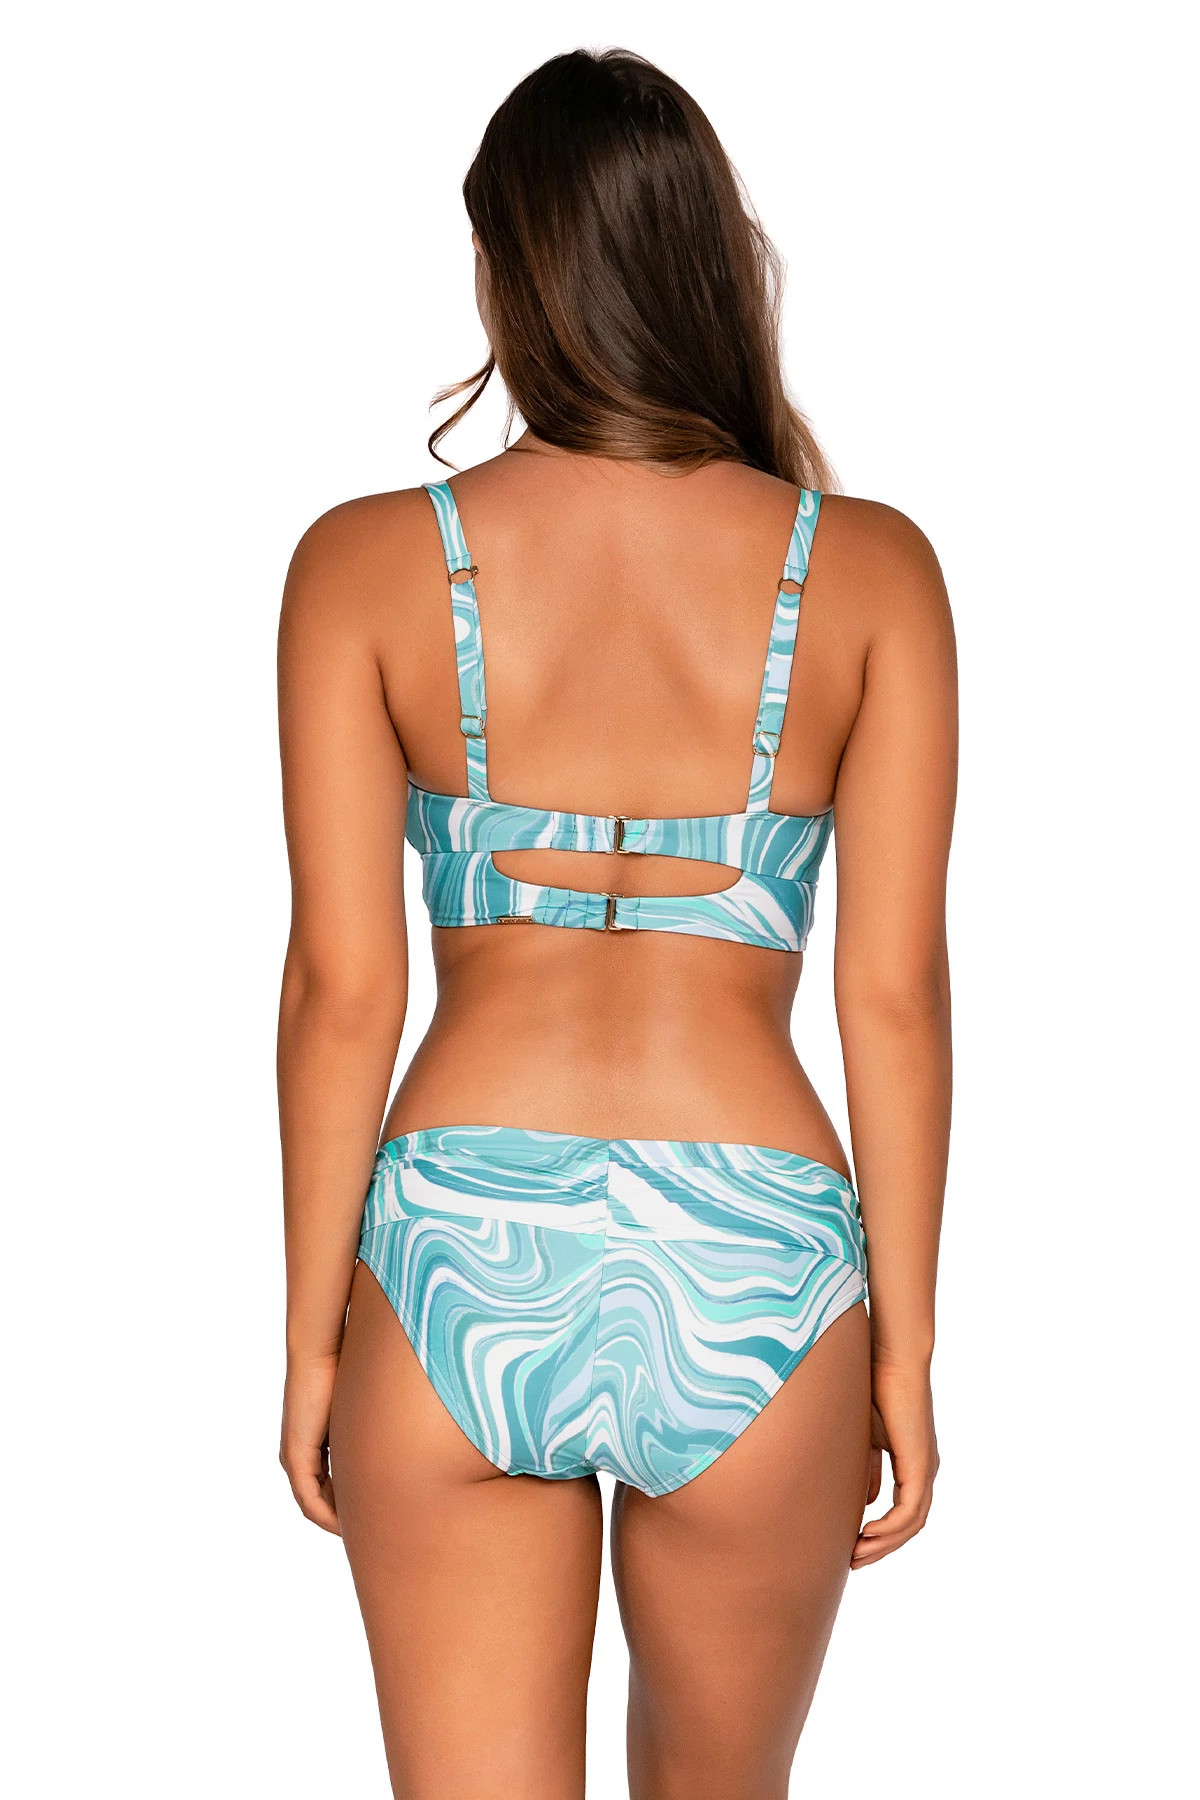 MOON TIDE Colette Underwire Bralette Bikini Top (E-H Cup) image number 3